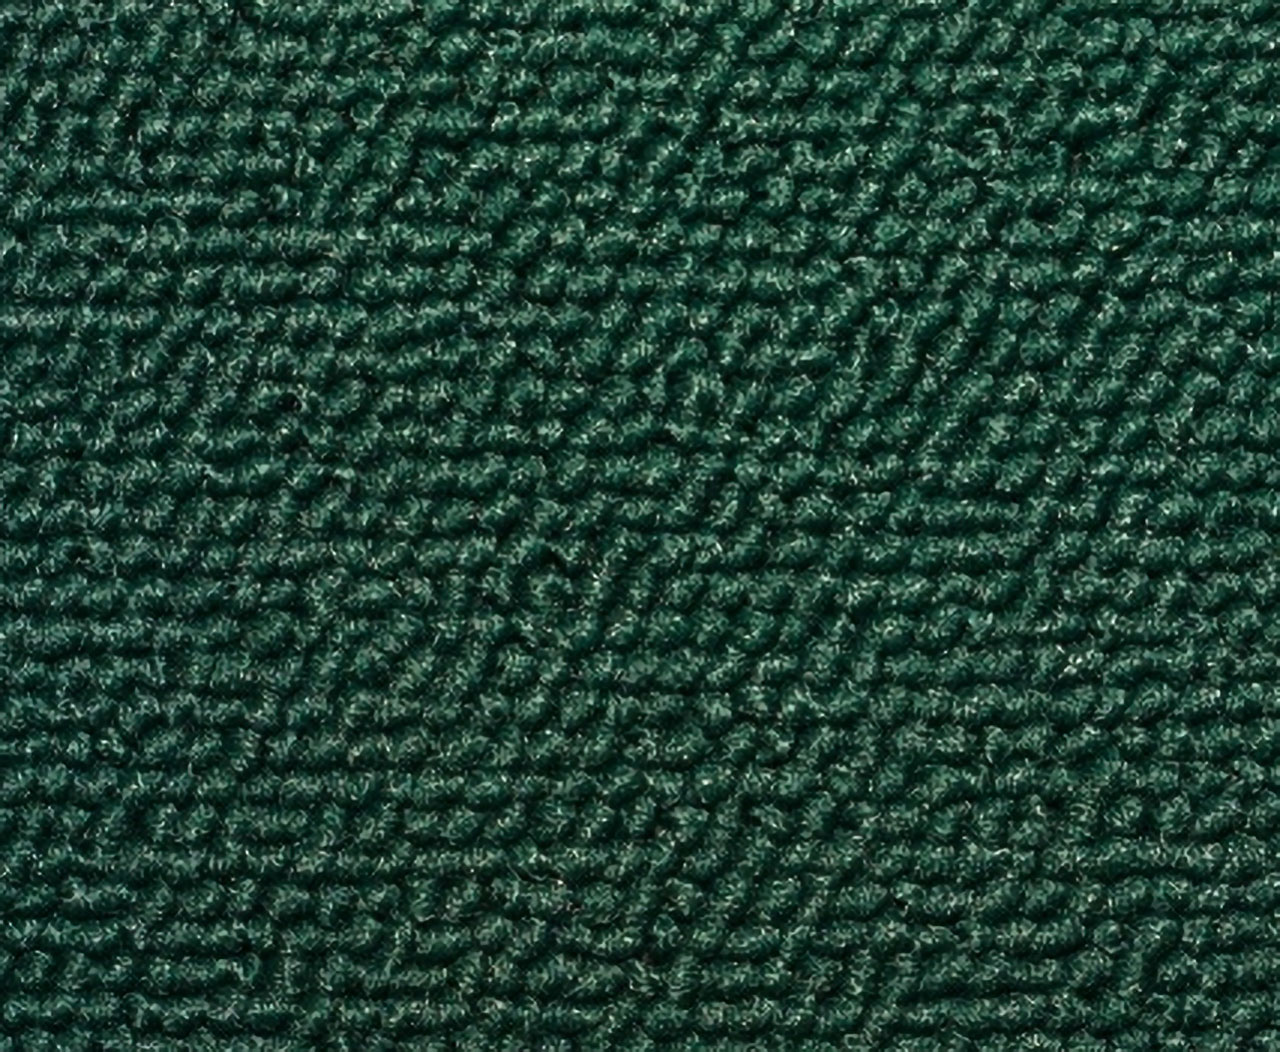 Holden Standard HR Standard Sedan E45 Opera Green Carpet (Image 1 of 1)